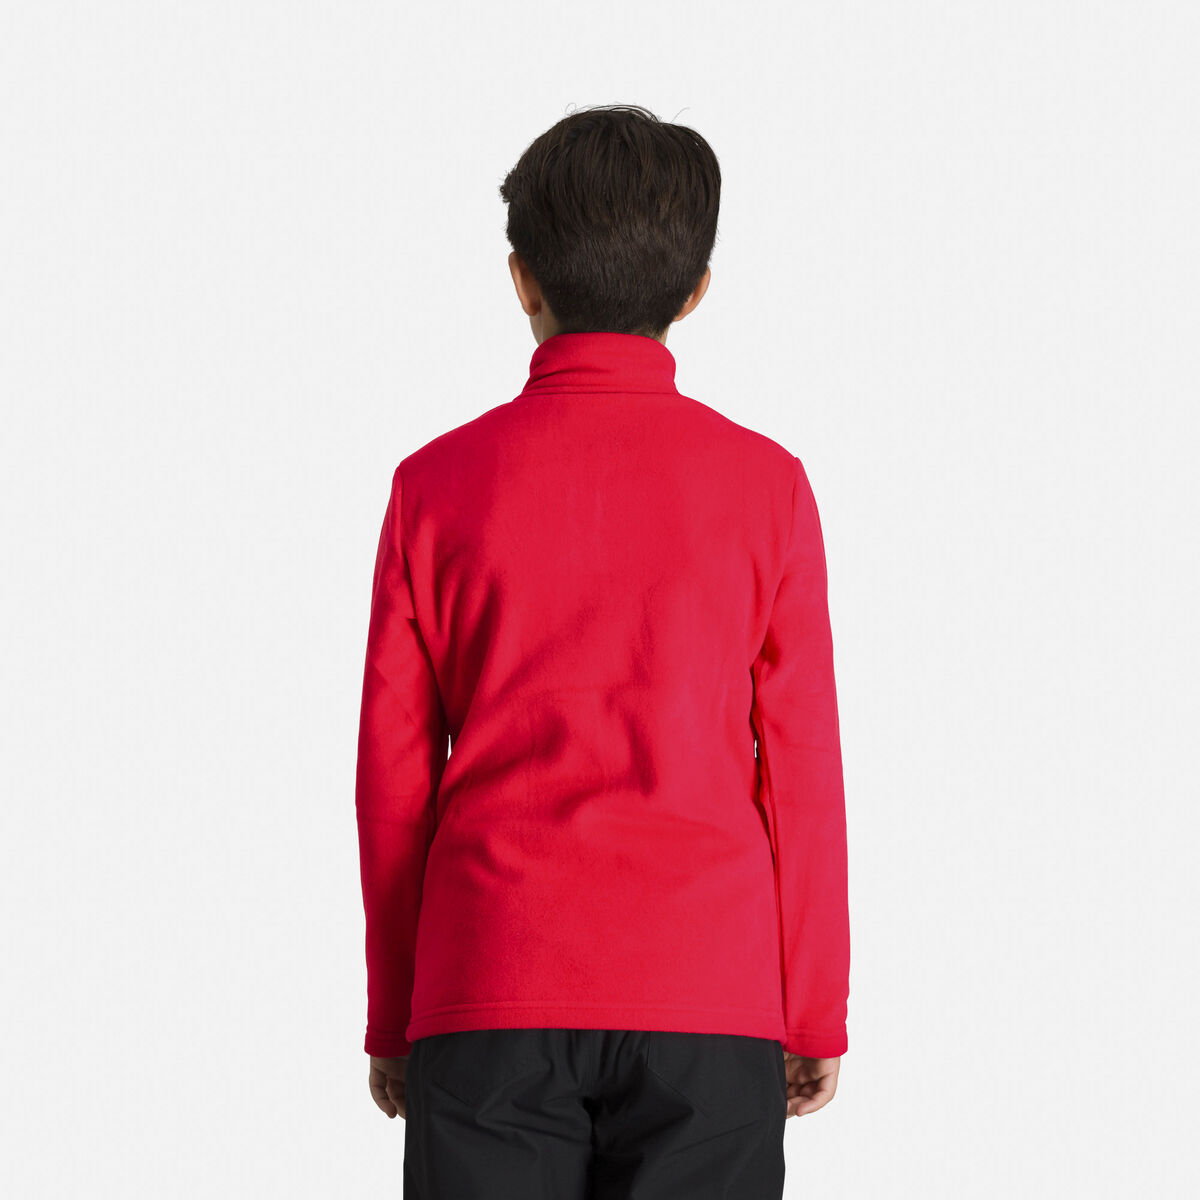 Rossignol Boys' Half-Zip Fleece Top Red